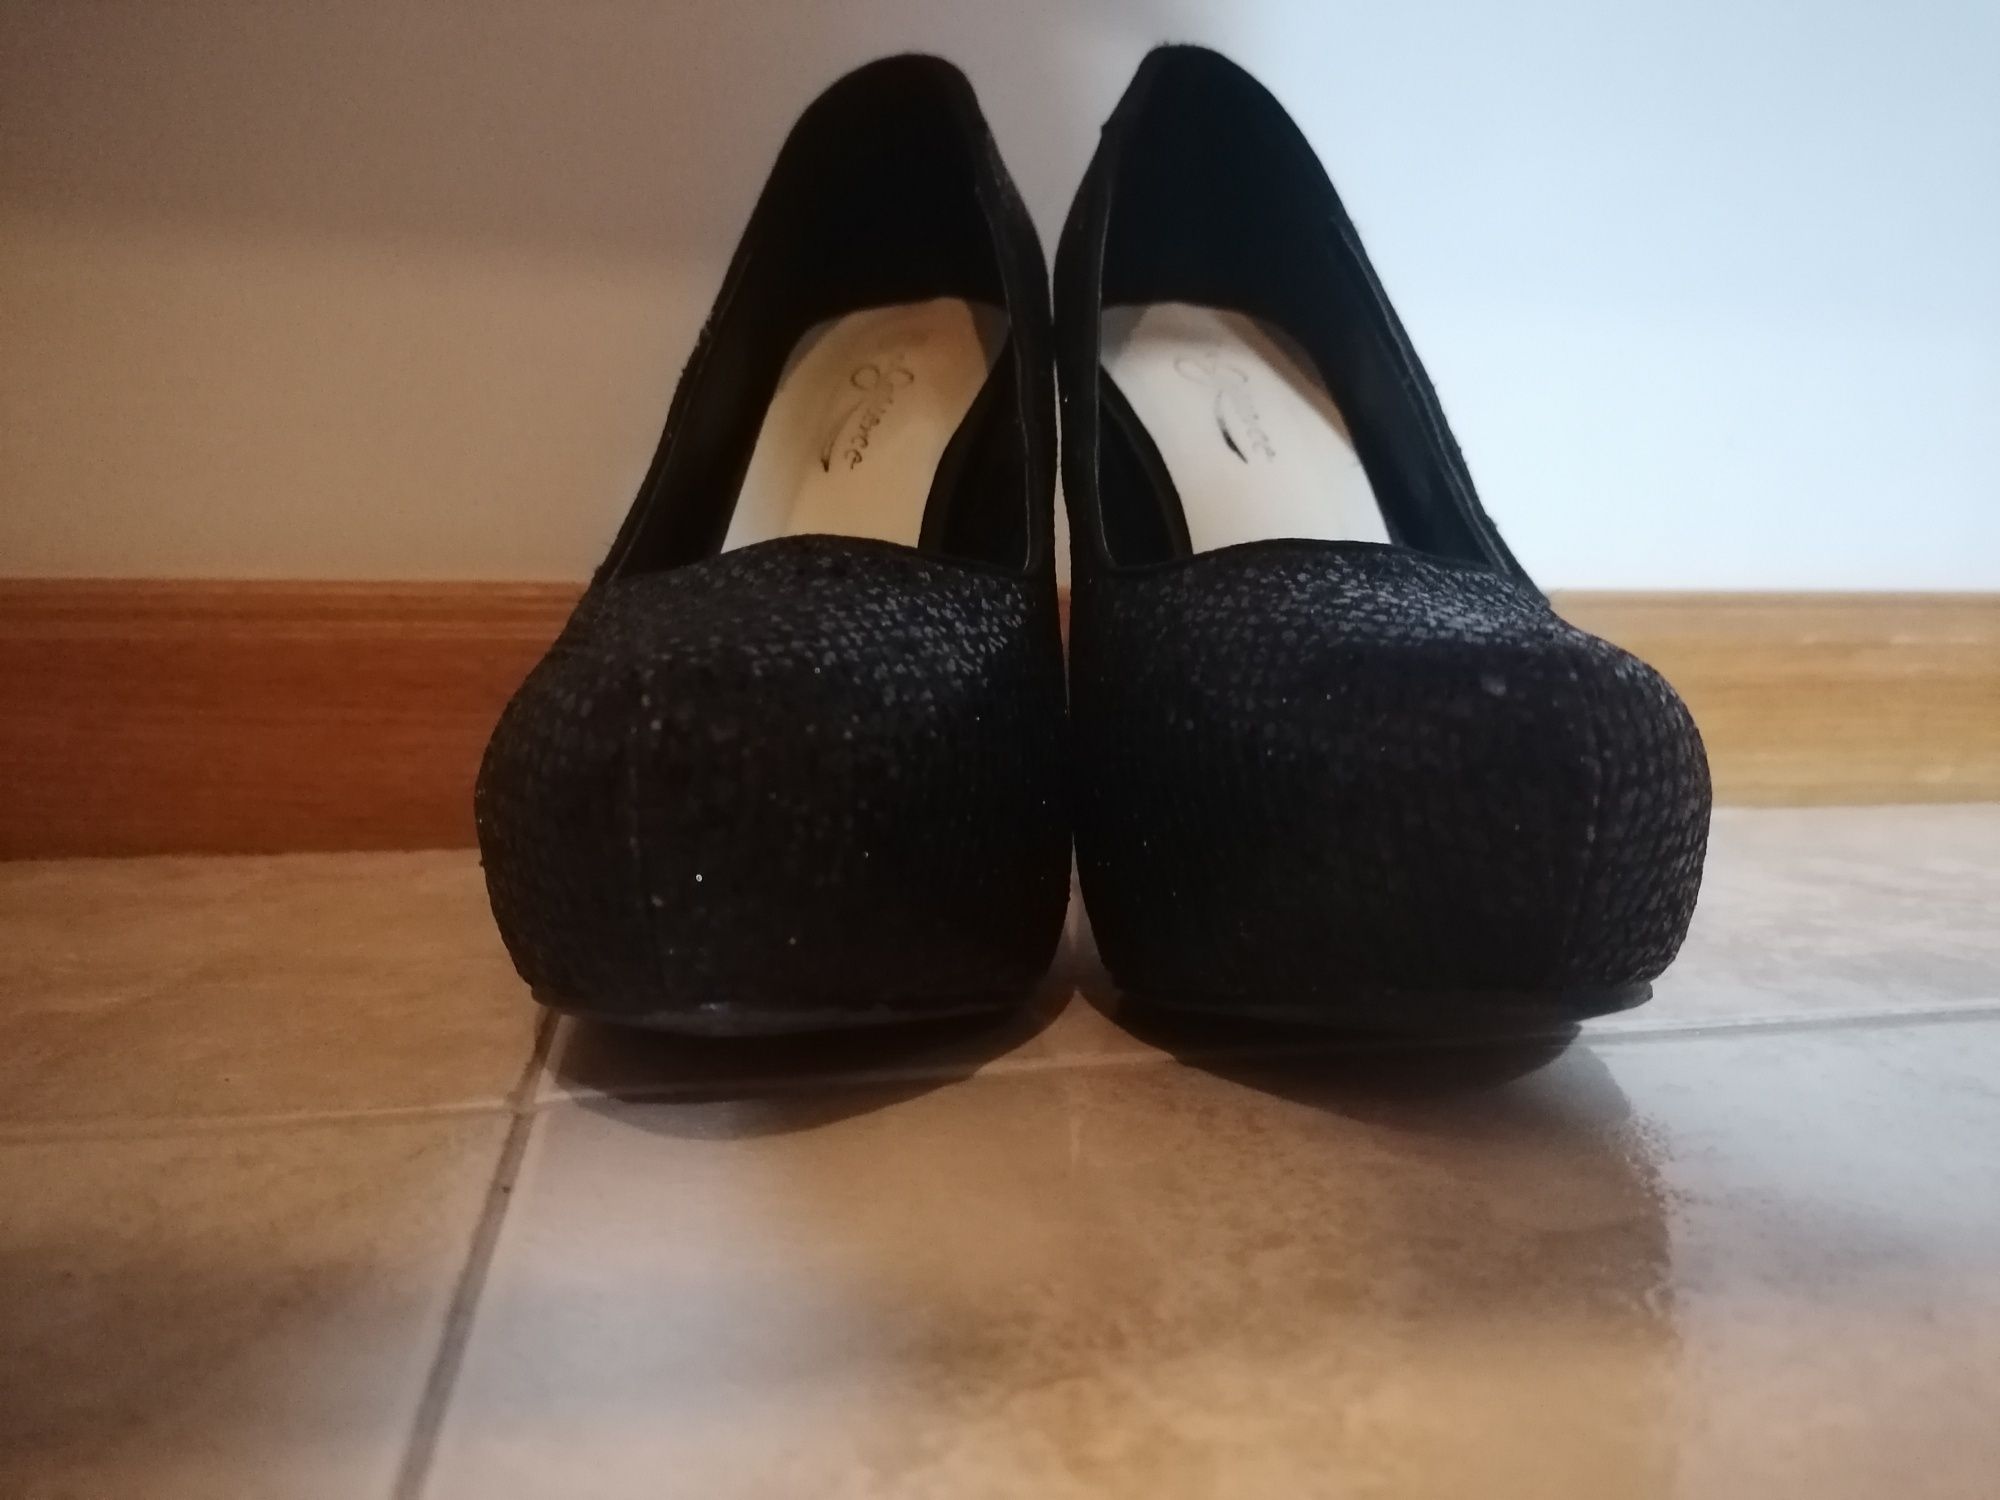 Sapatos pretos de Cunha a frente